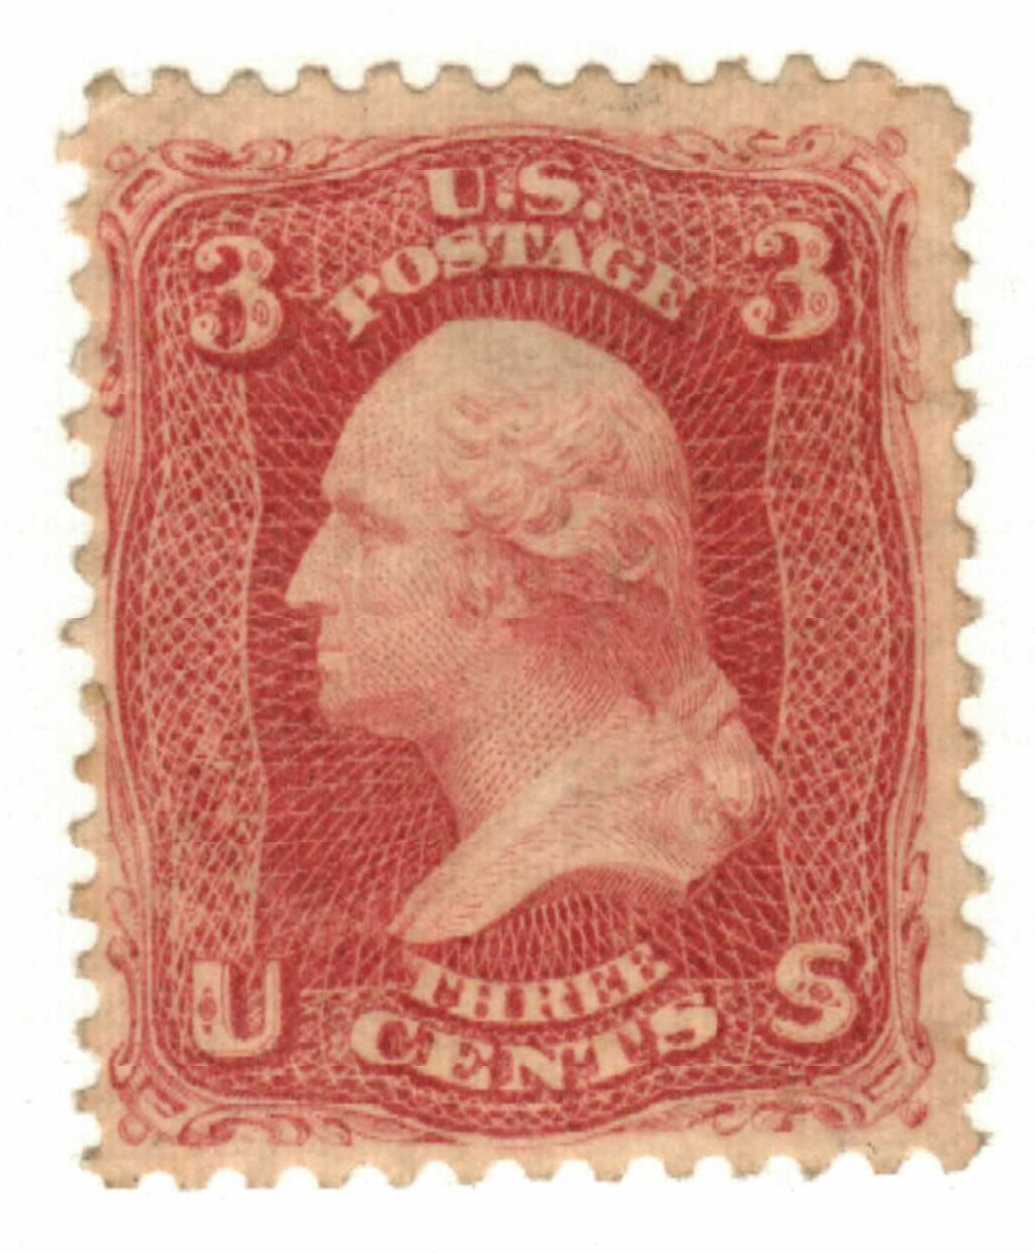 États-Unis: Enveloppe des années 1860 avec timbre Rose George Washington 3c  Scott 65 -  France